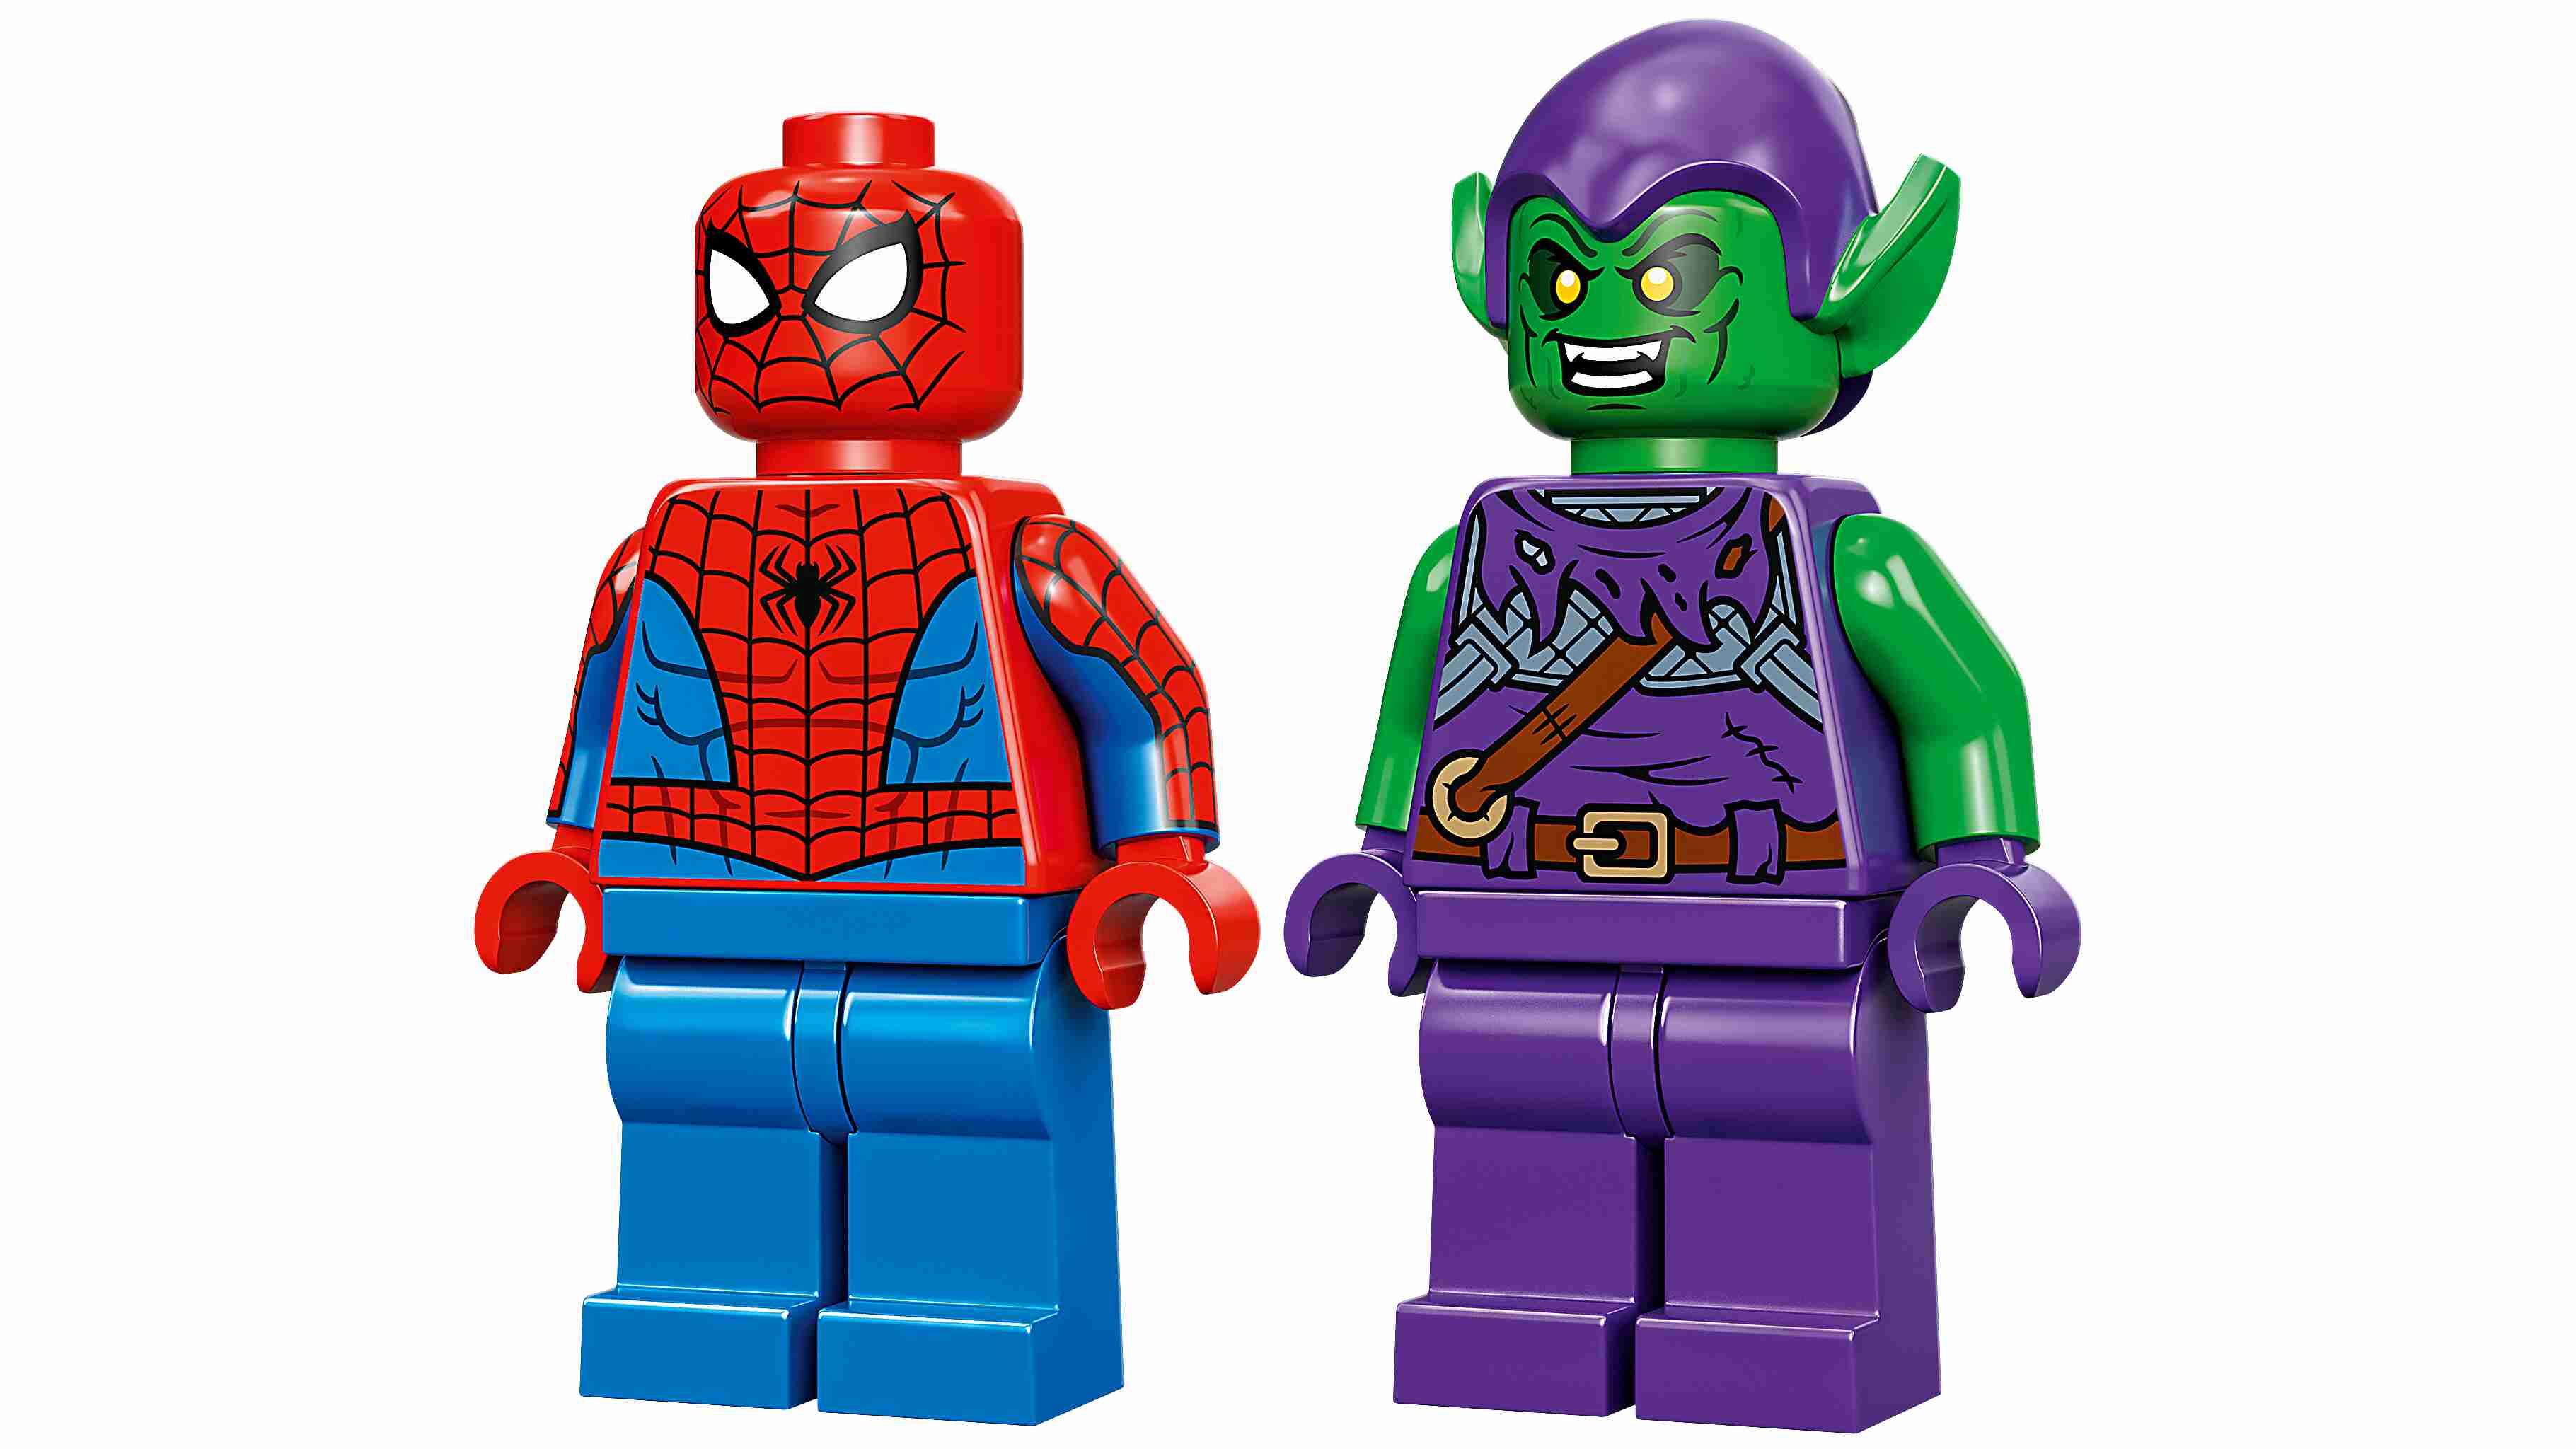 TBD-LEGO 76219 Marvel Super Heroes Spider-Mans und Green Goblins Mech-Duell